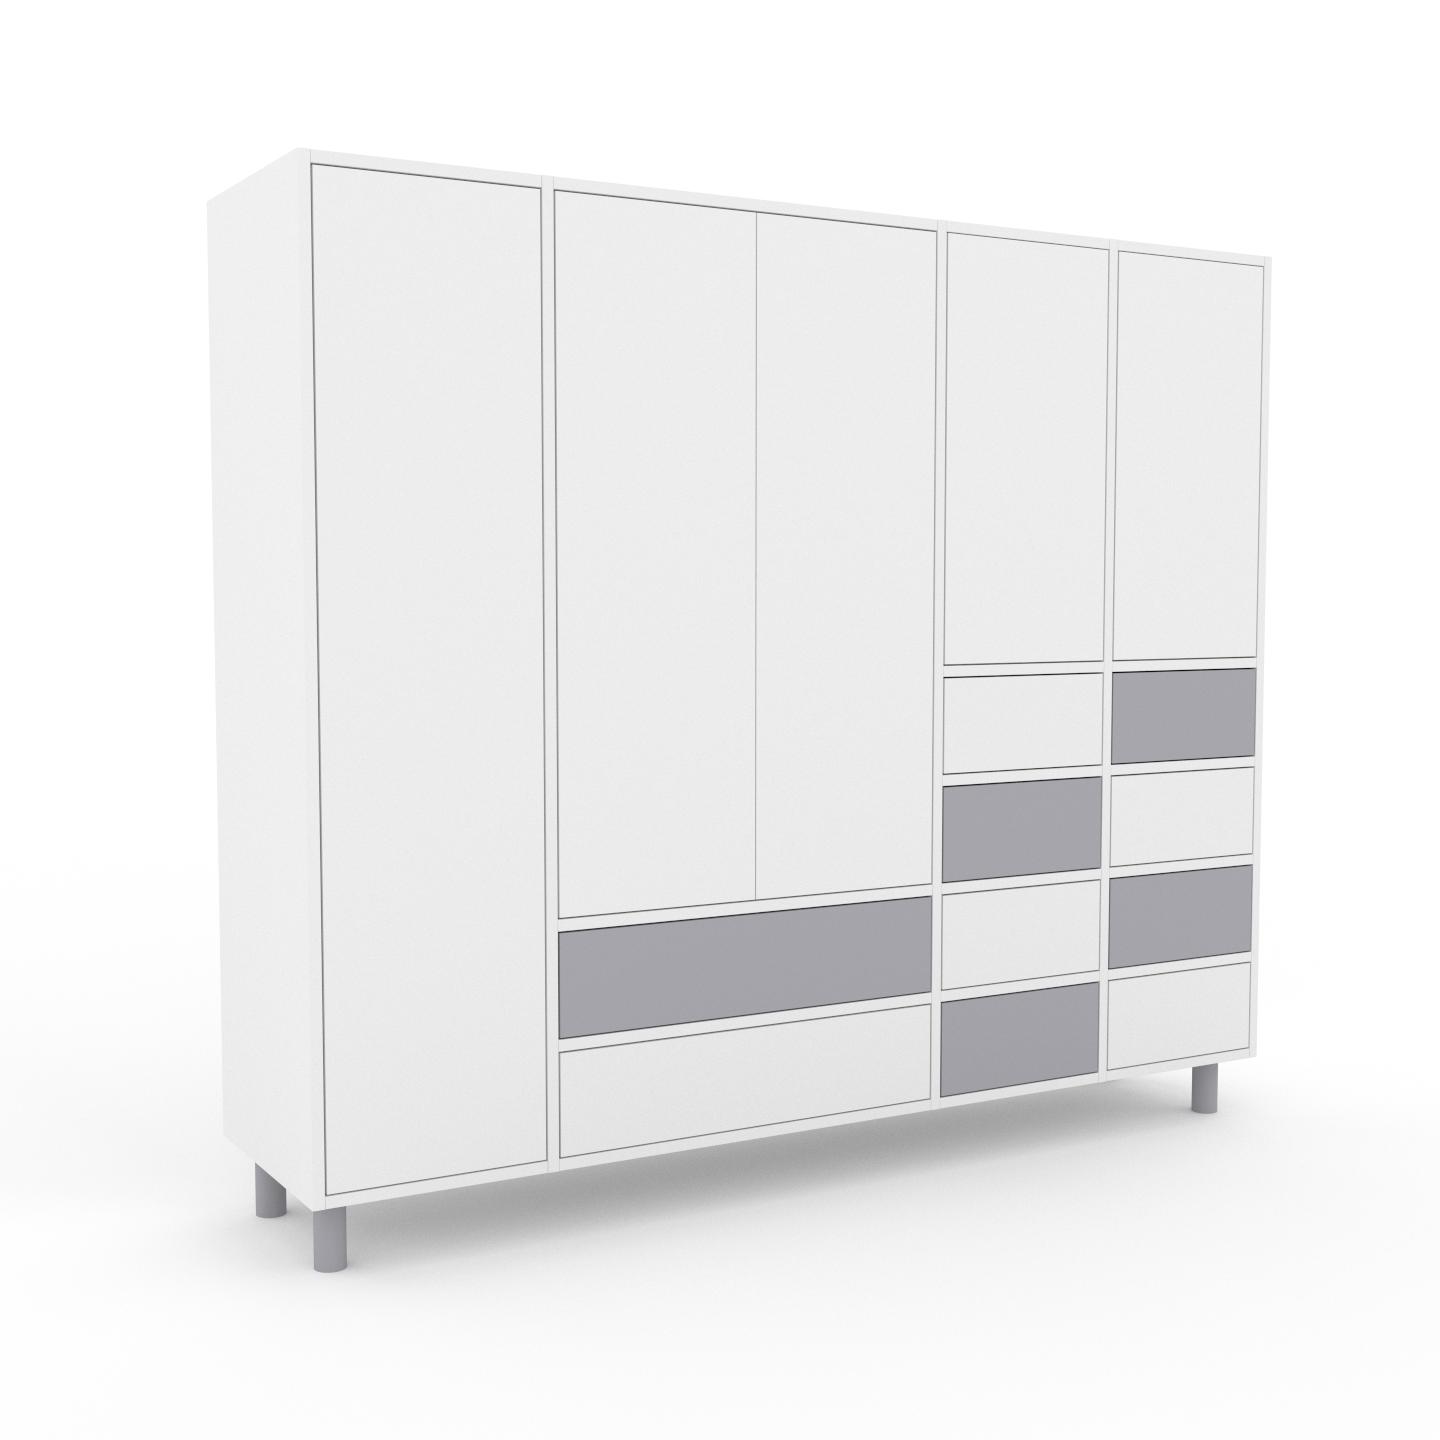 MYCS Wohnwand Weiß - Individuelle Designer-Regalwand: Schubladen in Weiß & Türen in Weiß - Hochwertige Materialien - 193 x 168 x 47 cm, Konfigurator